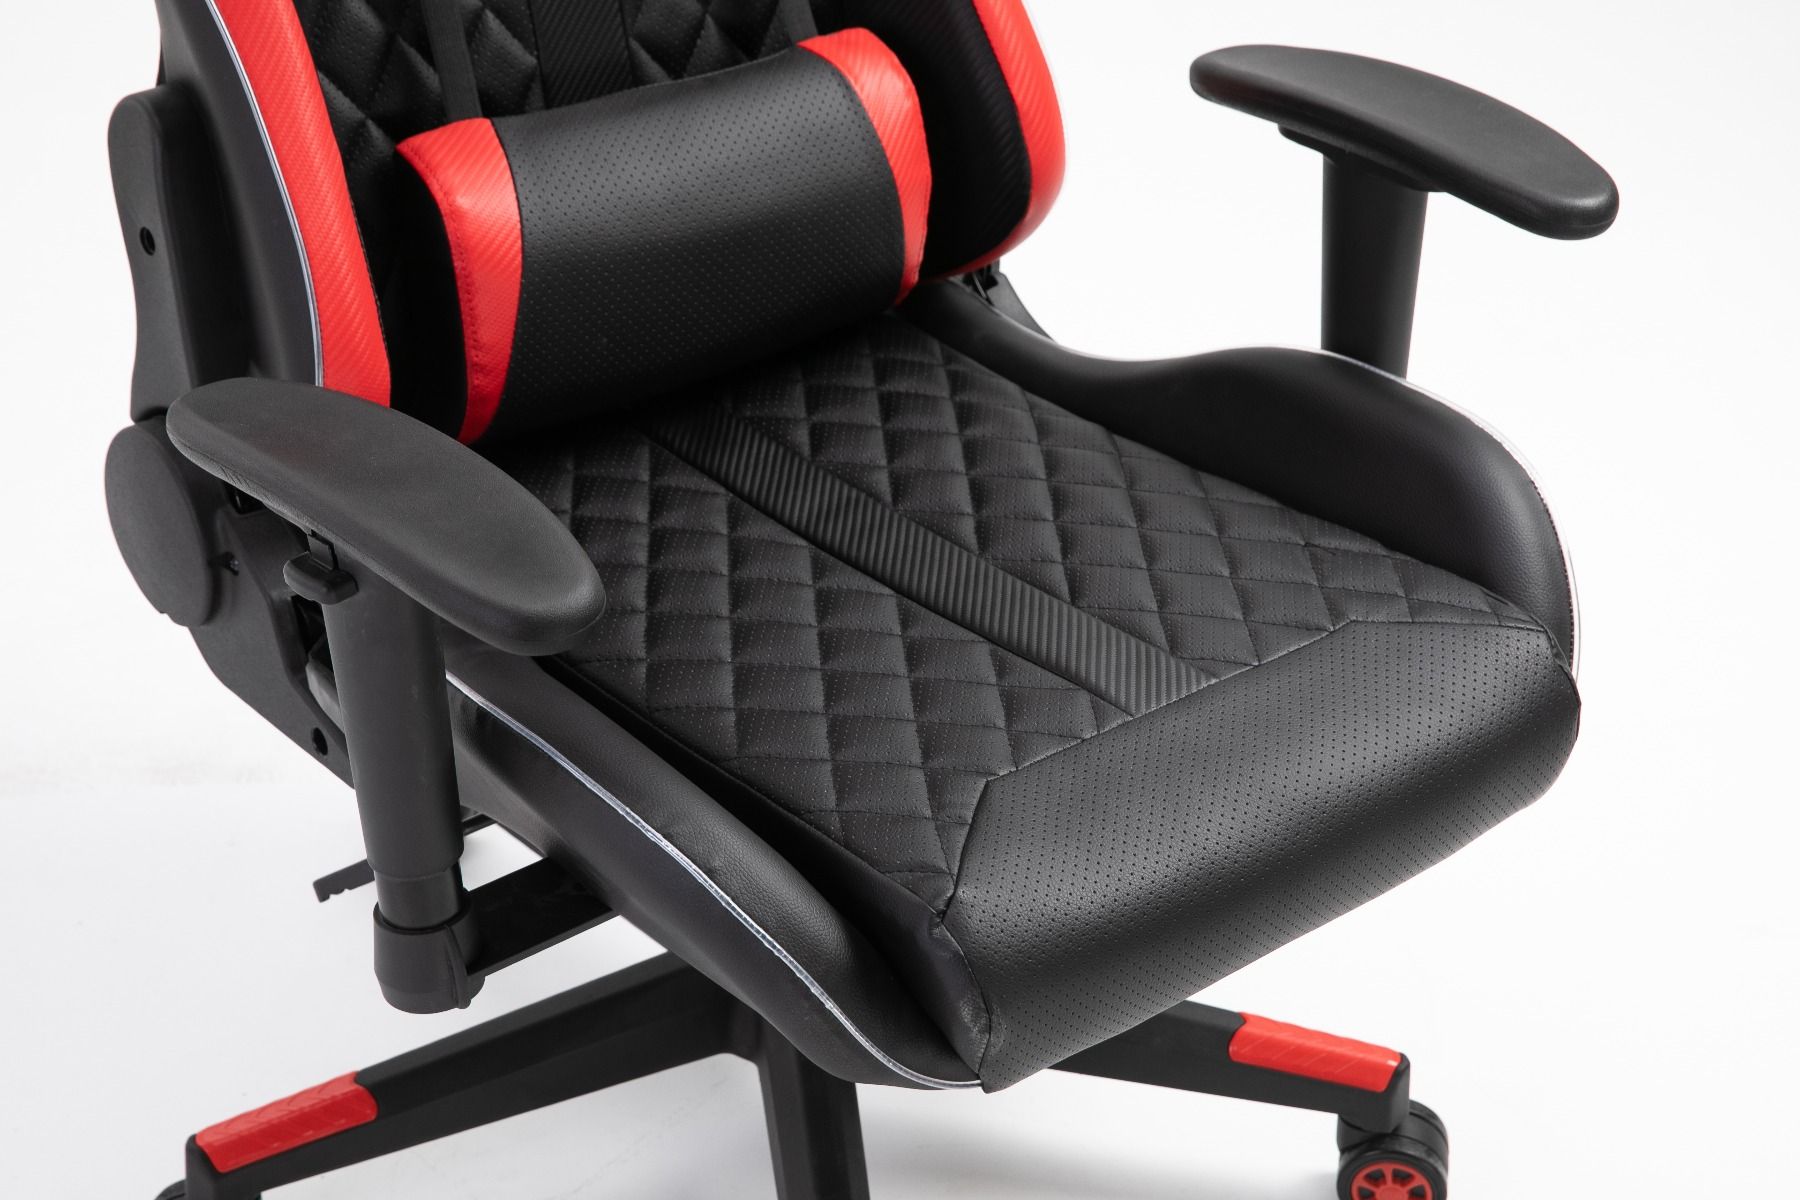 Raad Rationalisatie comfortabel rode gaming bureaustoel met LED verlichting kopen | Aktie Wonen.nl